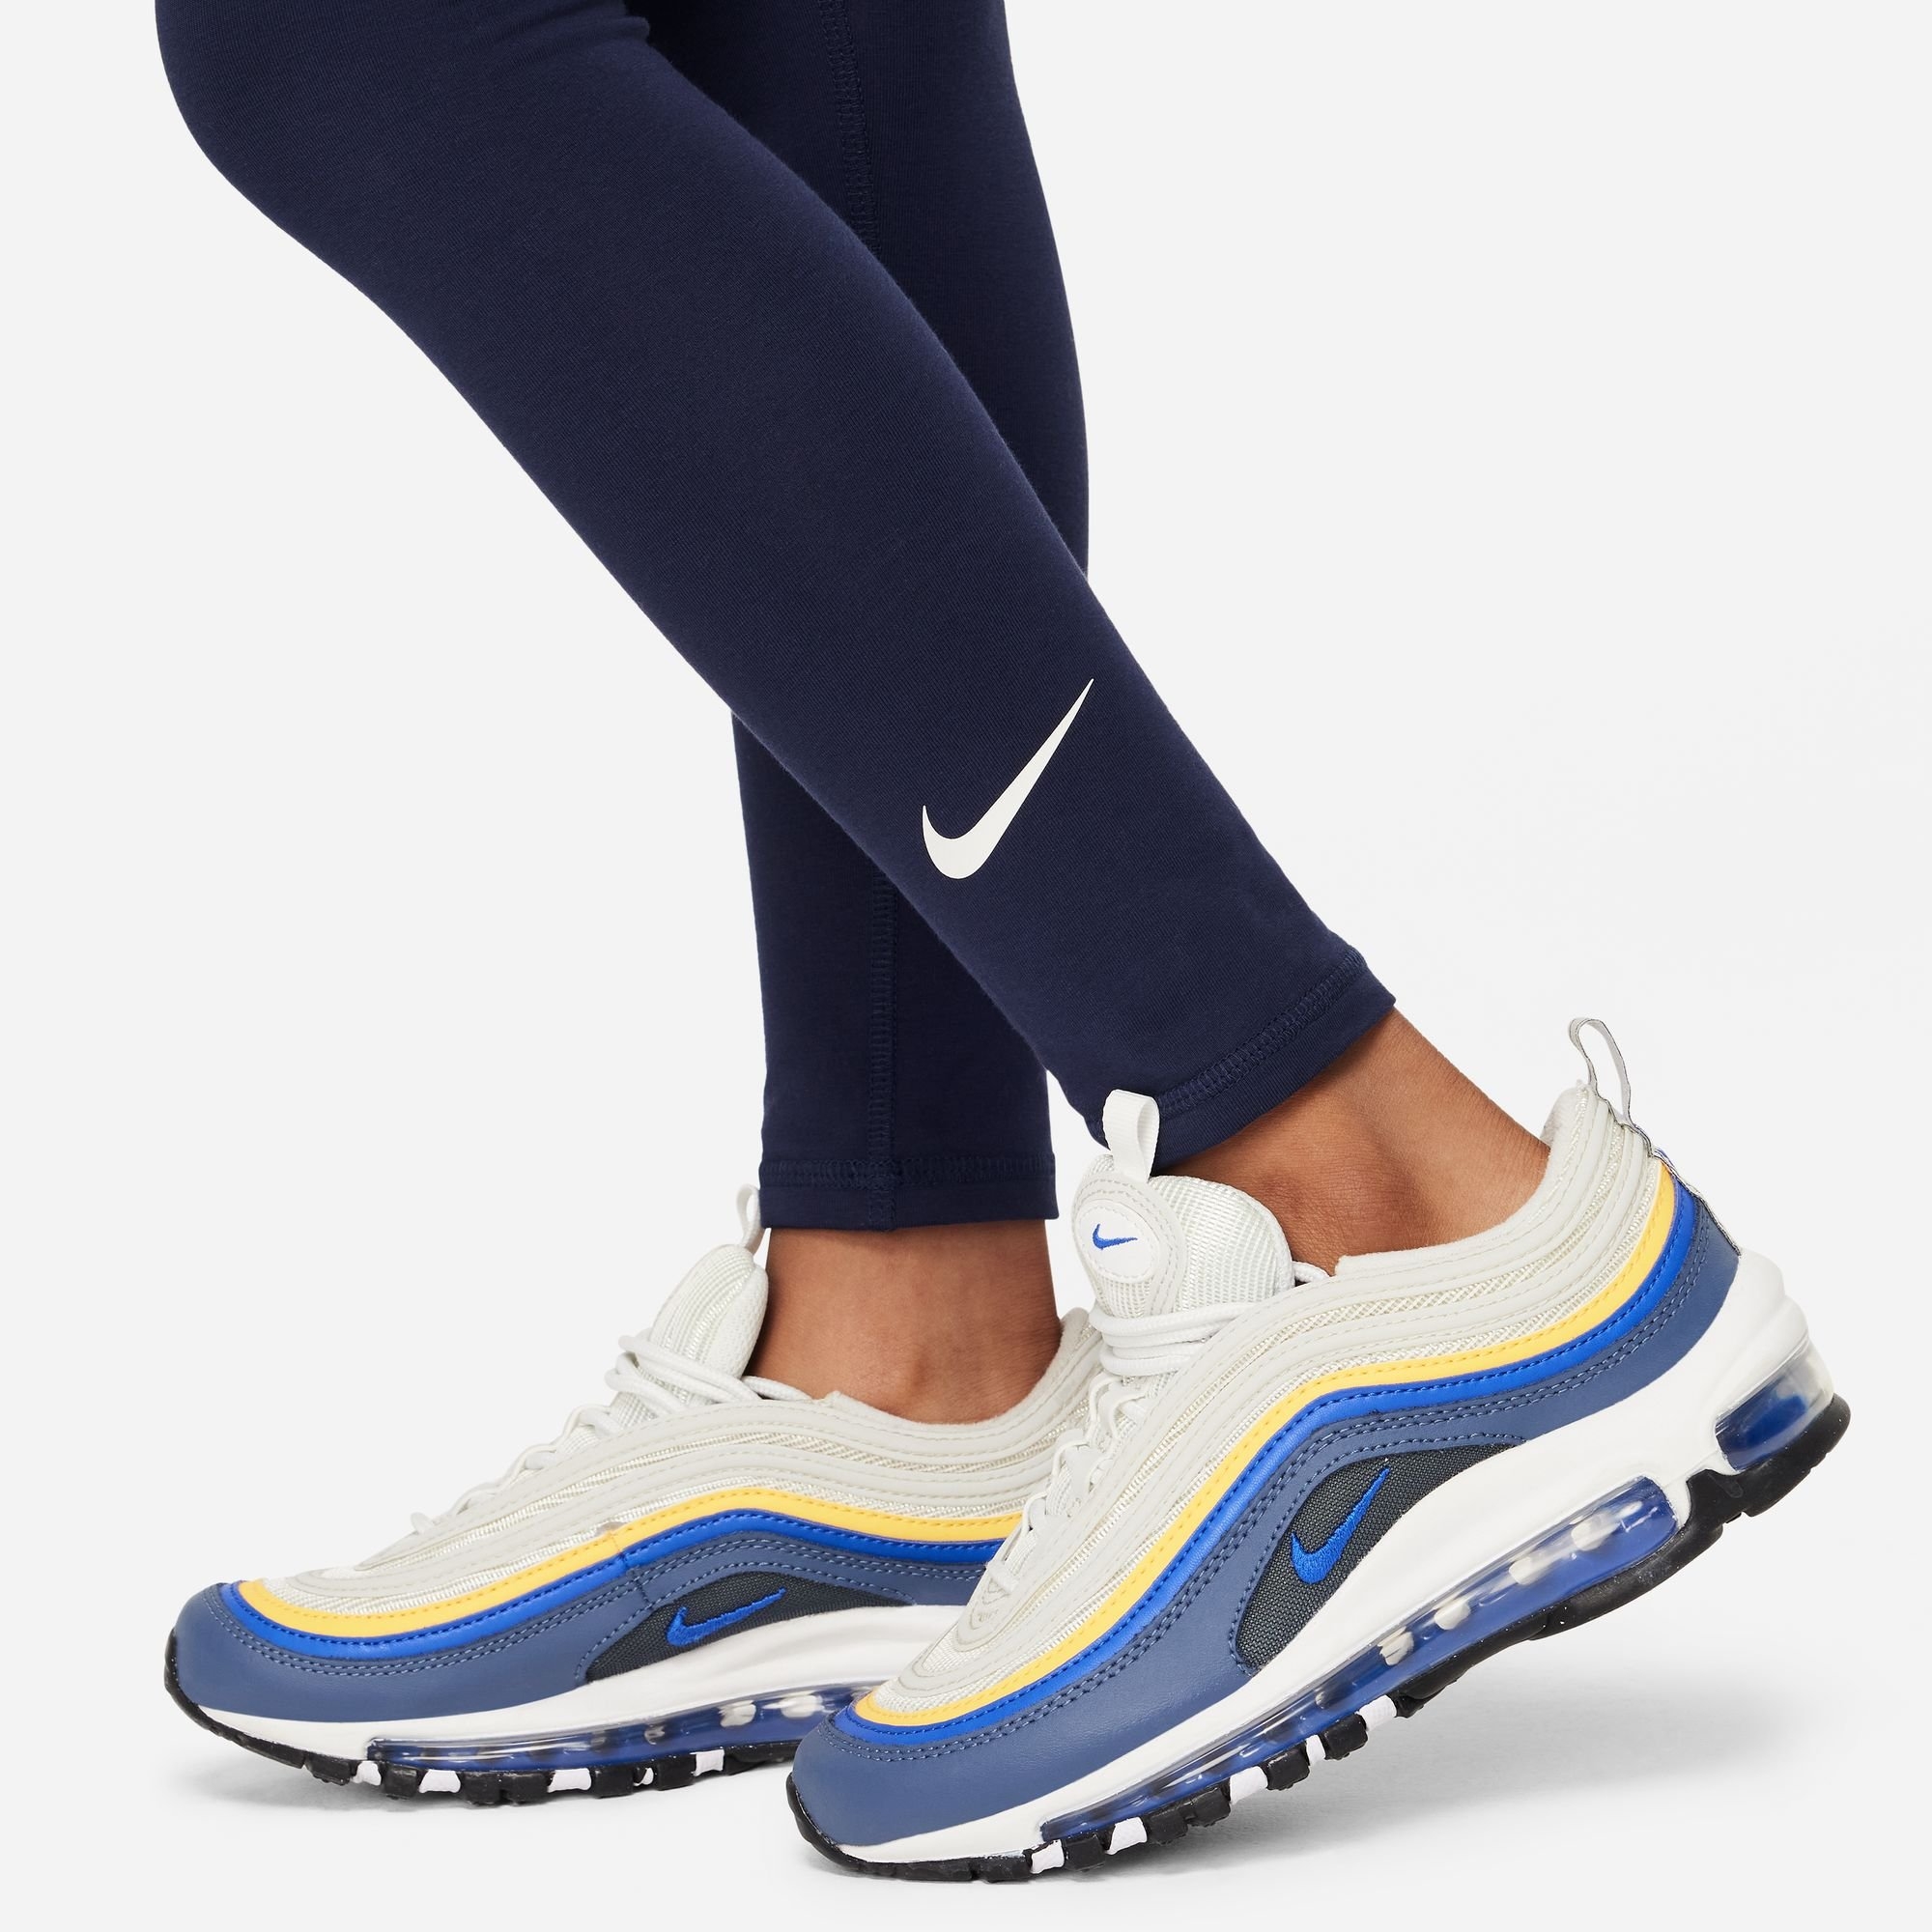 Legging online OTTO de in Nike shop | Sportswear